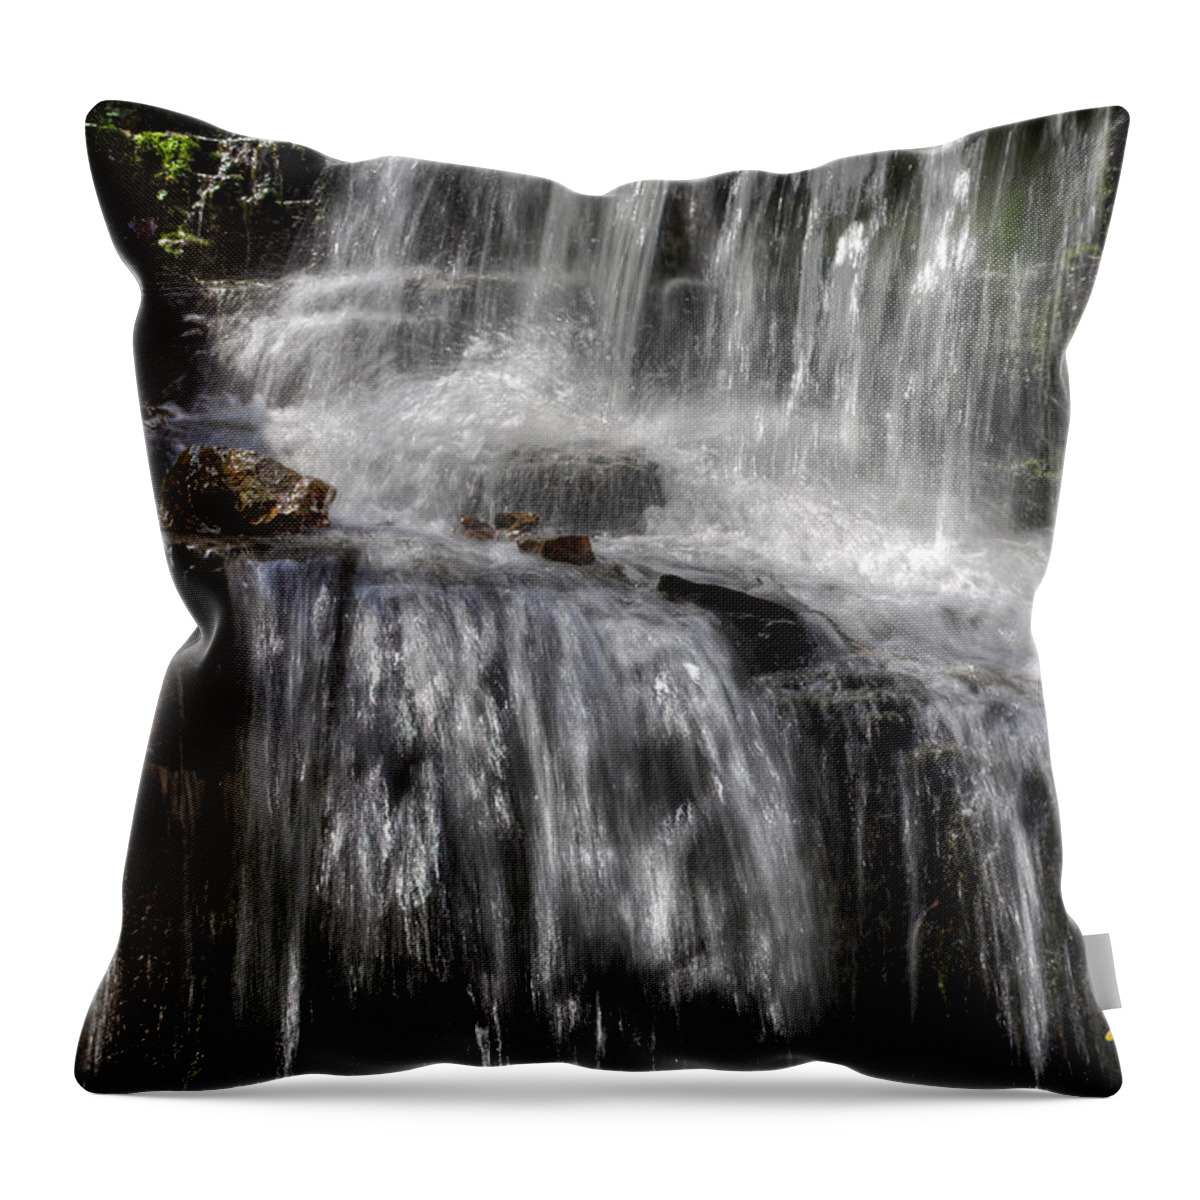 Minnesota Throw Pillow featuring the photograph Hidden Falls Sparkles by Rikk Flohr